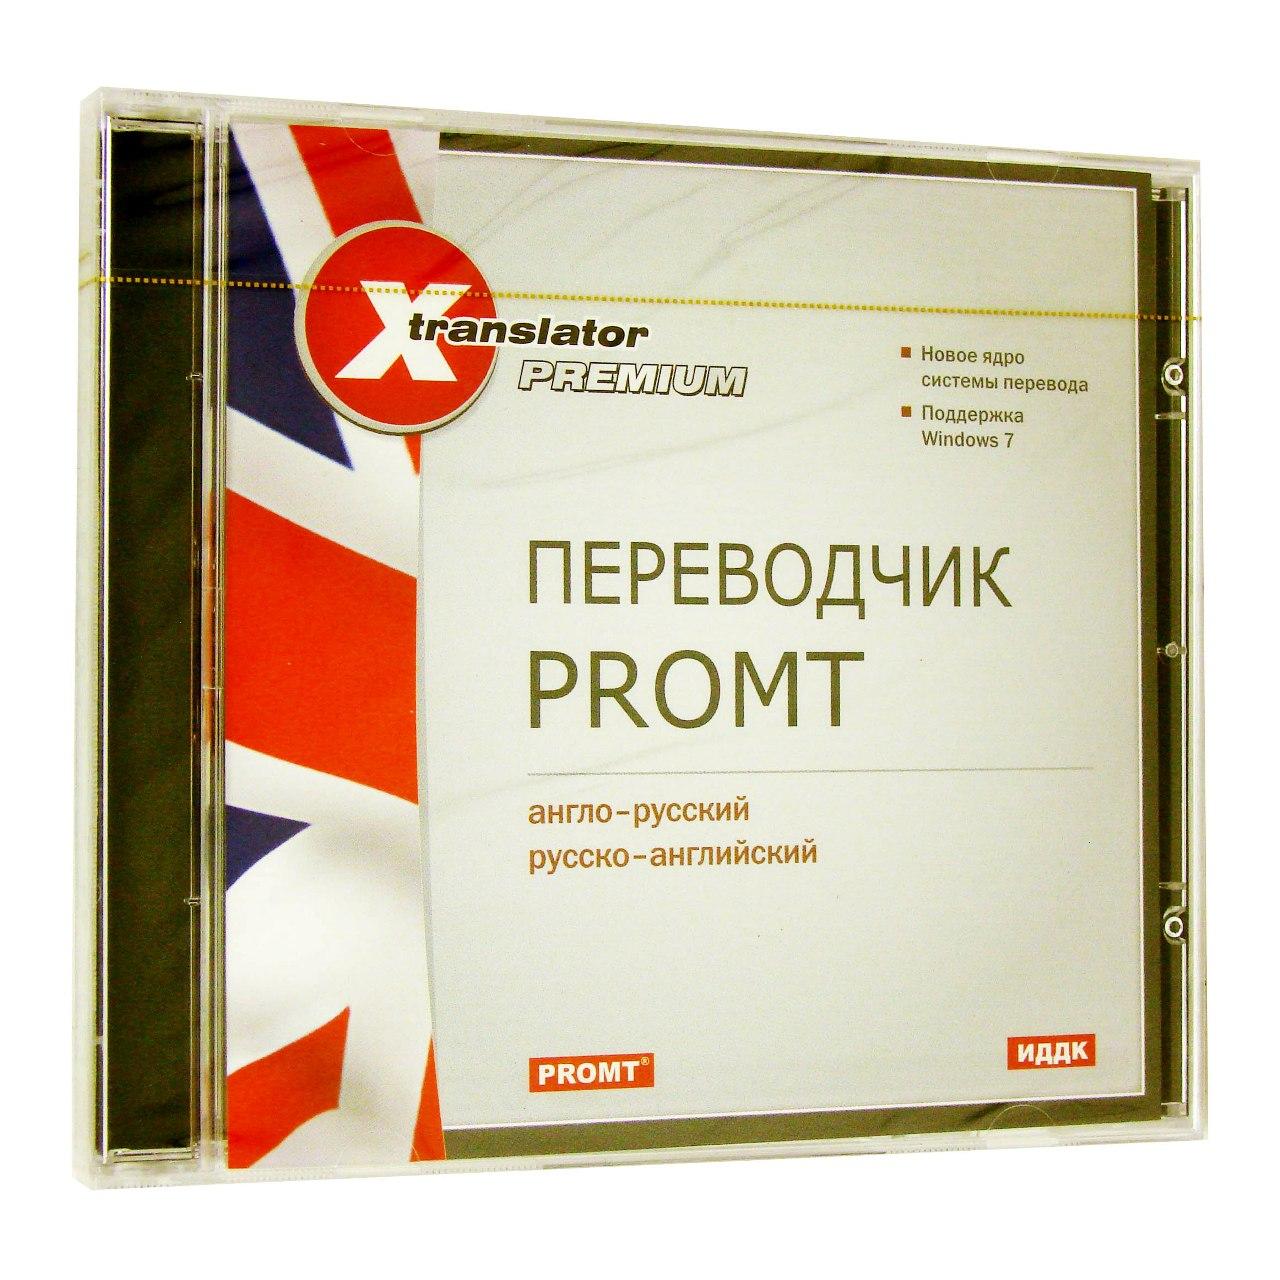 Компьютерный компакт-диск X-Translator Premium. Переводчик Promt: Англо-русский, русско-английский (ПК), фирма "ИДДК", 1CD